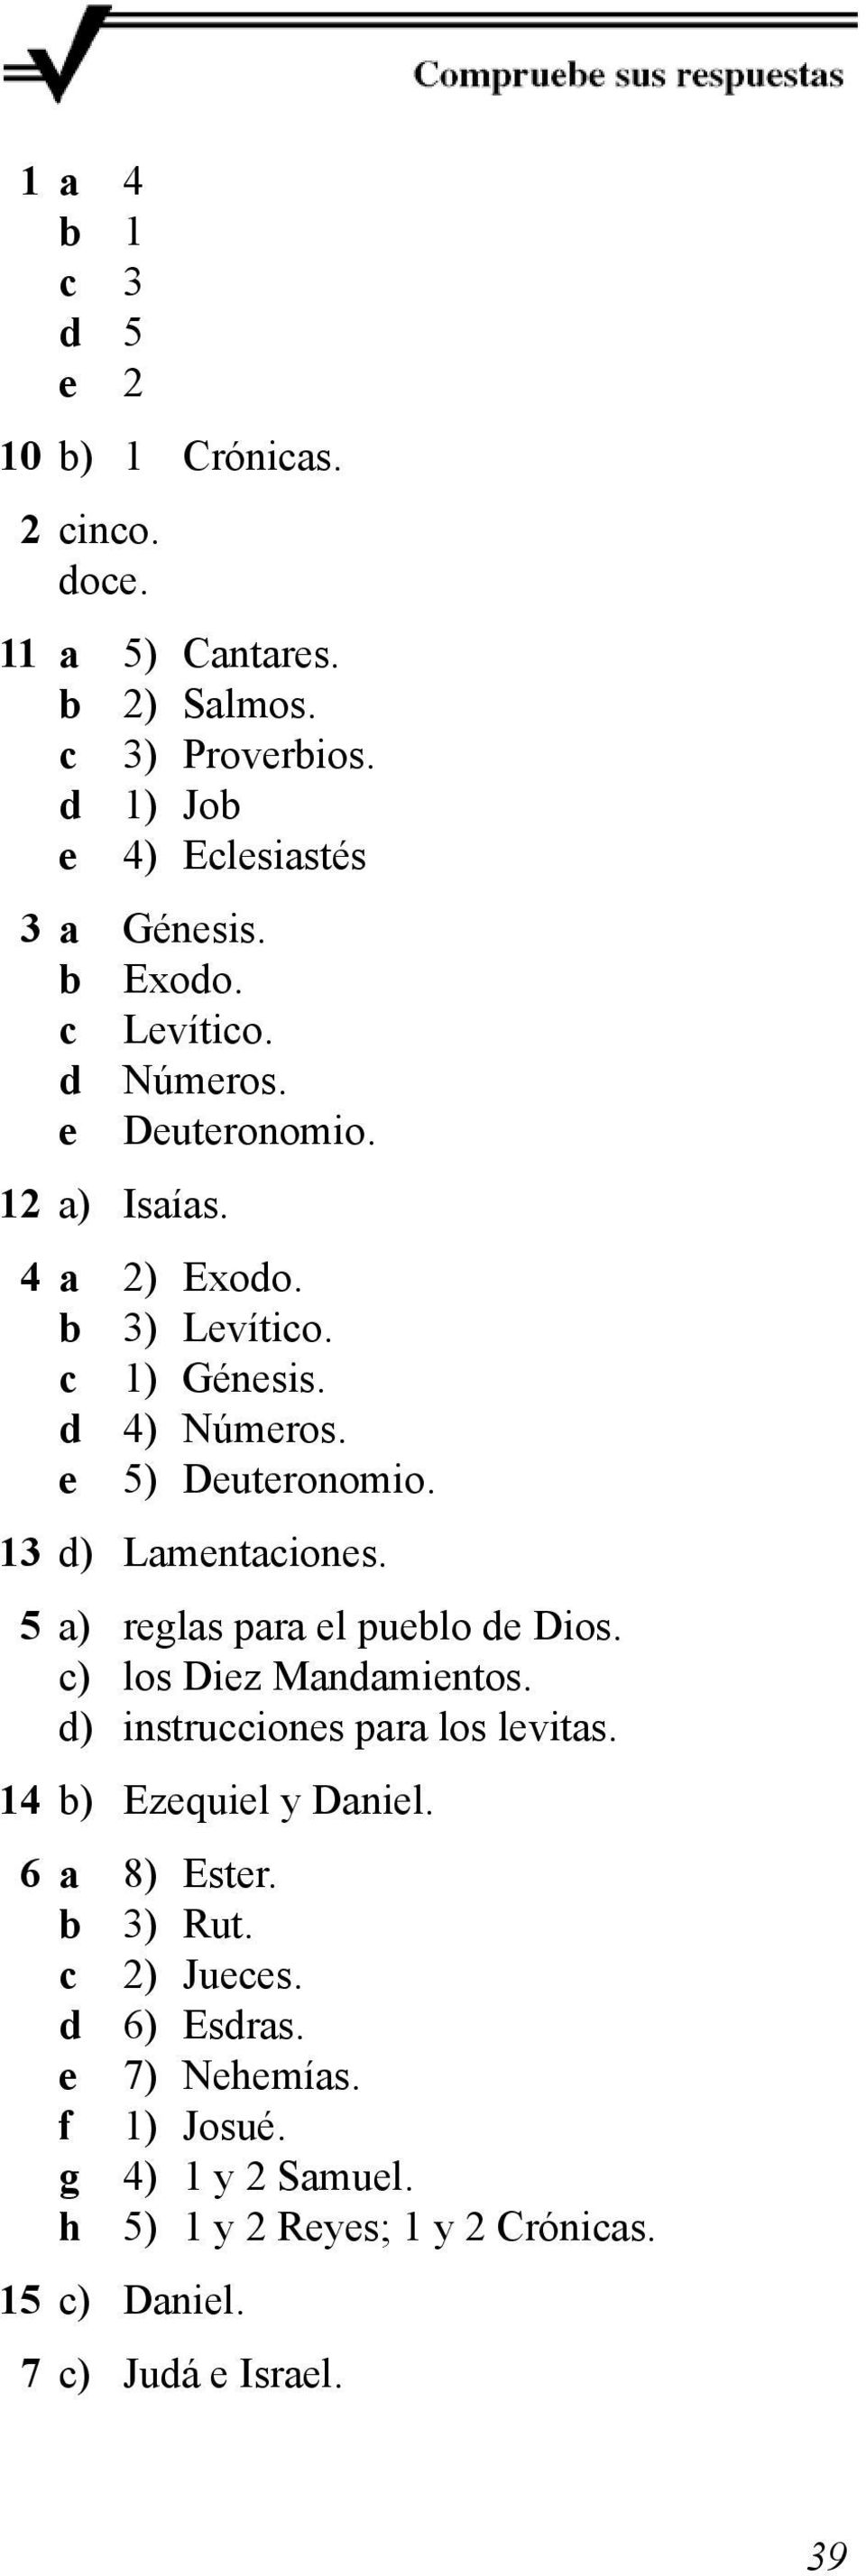 13 d) Lamentaciones. 5 a) reglas para el pueblo de Dios. c) los Diez Mandamientos. d) instrucciones para los levitas. 14 b) Ezequiel y Daniel.